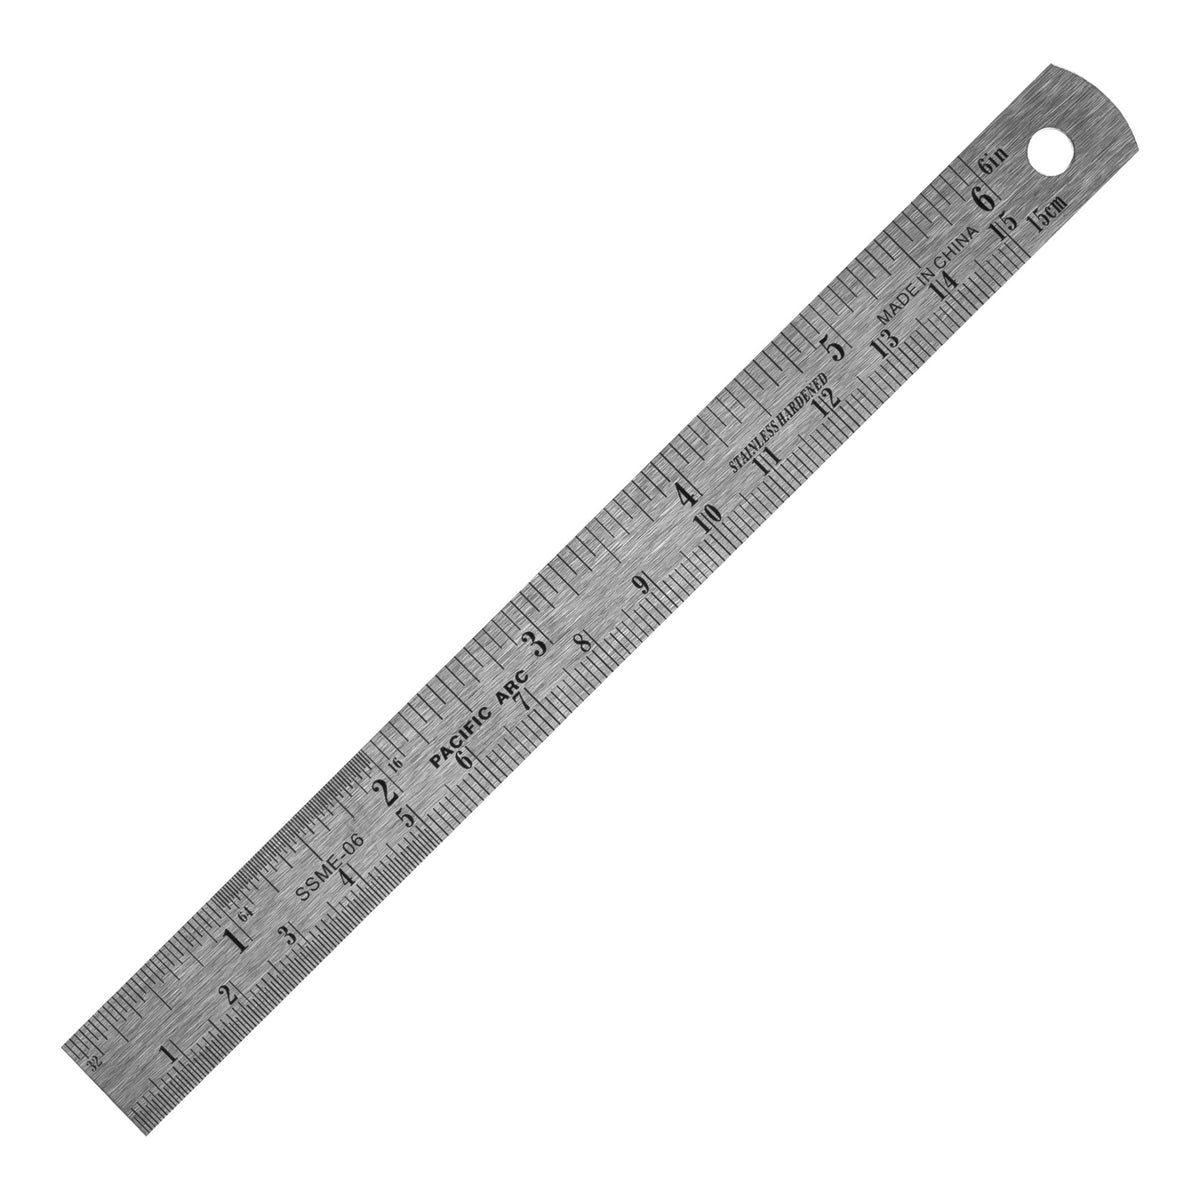 Metal 15 Cm Ruler, 20 Cm Metal Ruler, Drawing Supplies